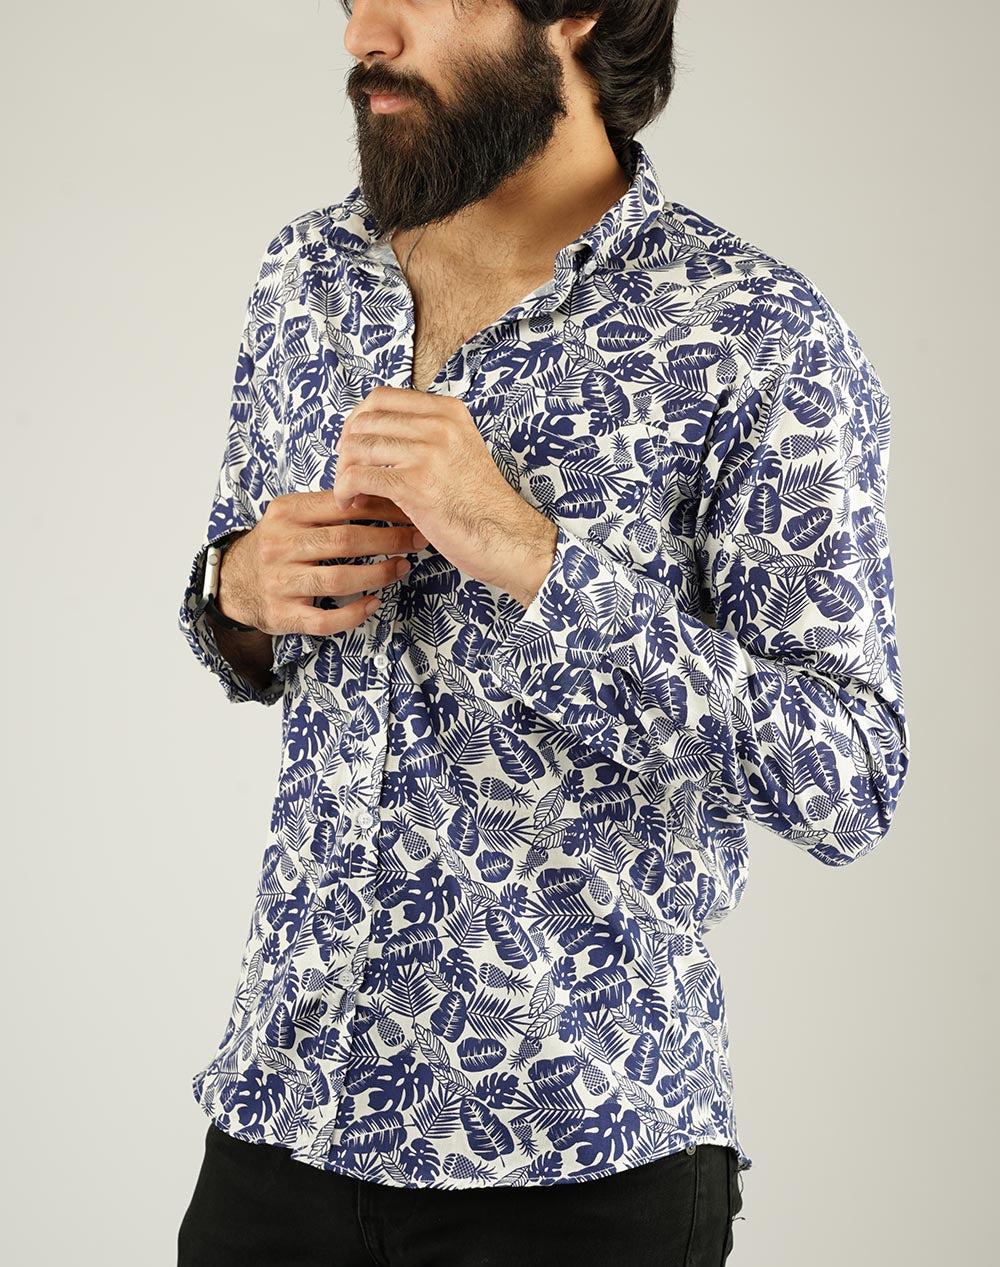 Floral Shirt for Men - Code FL-01